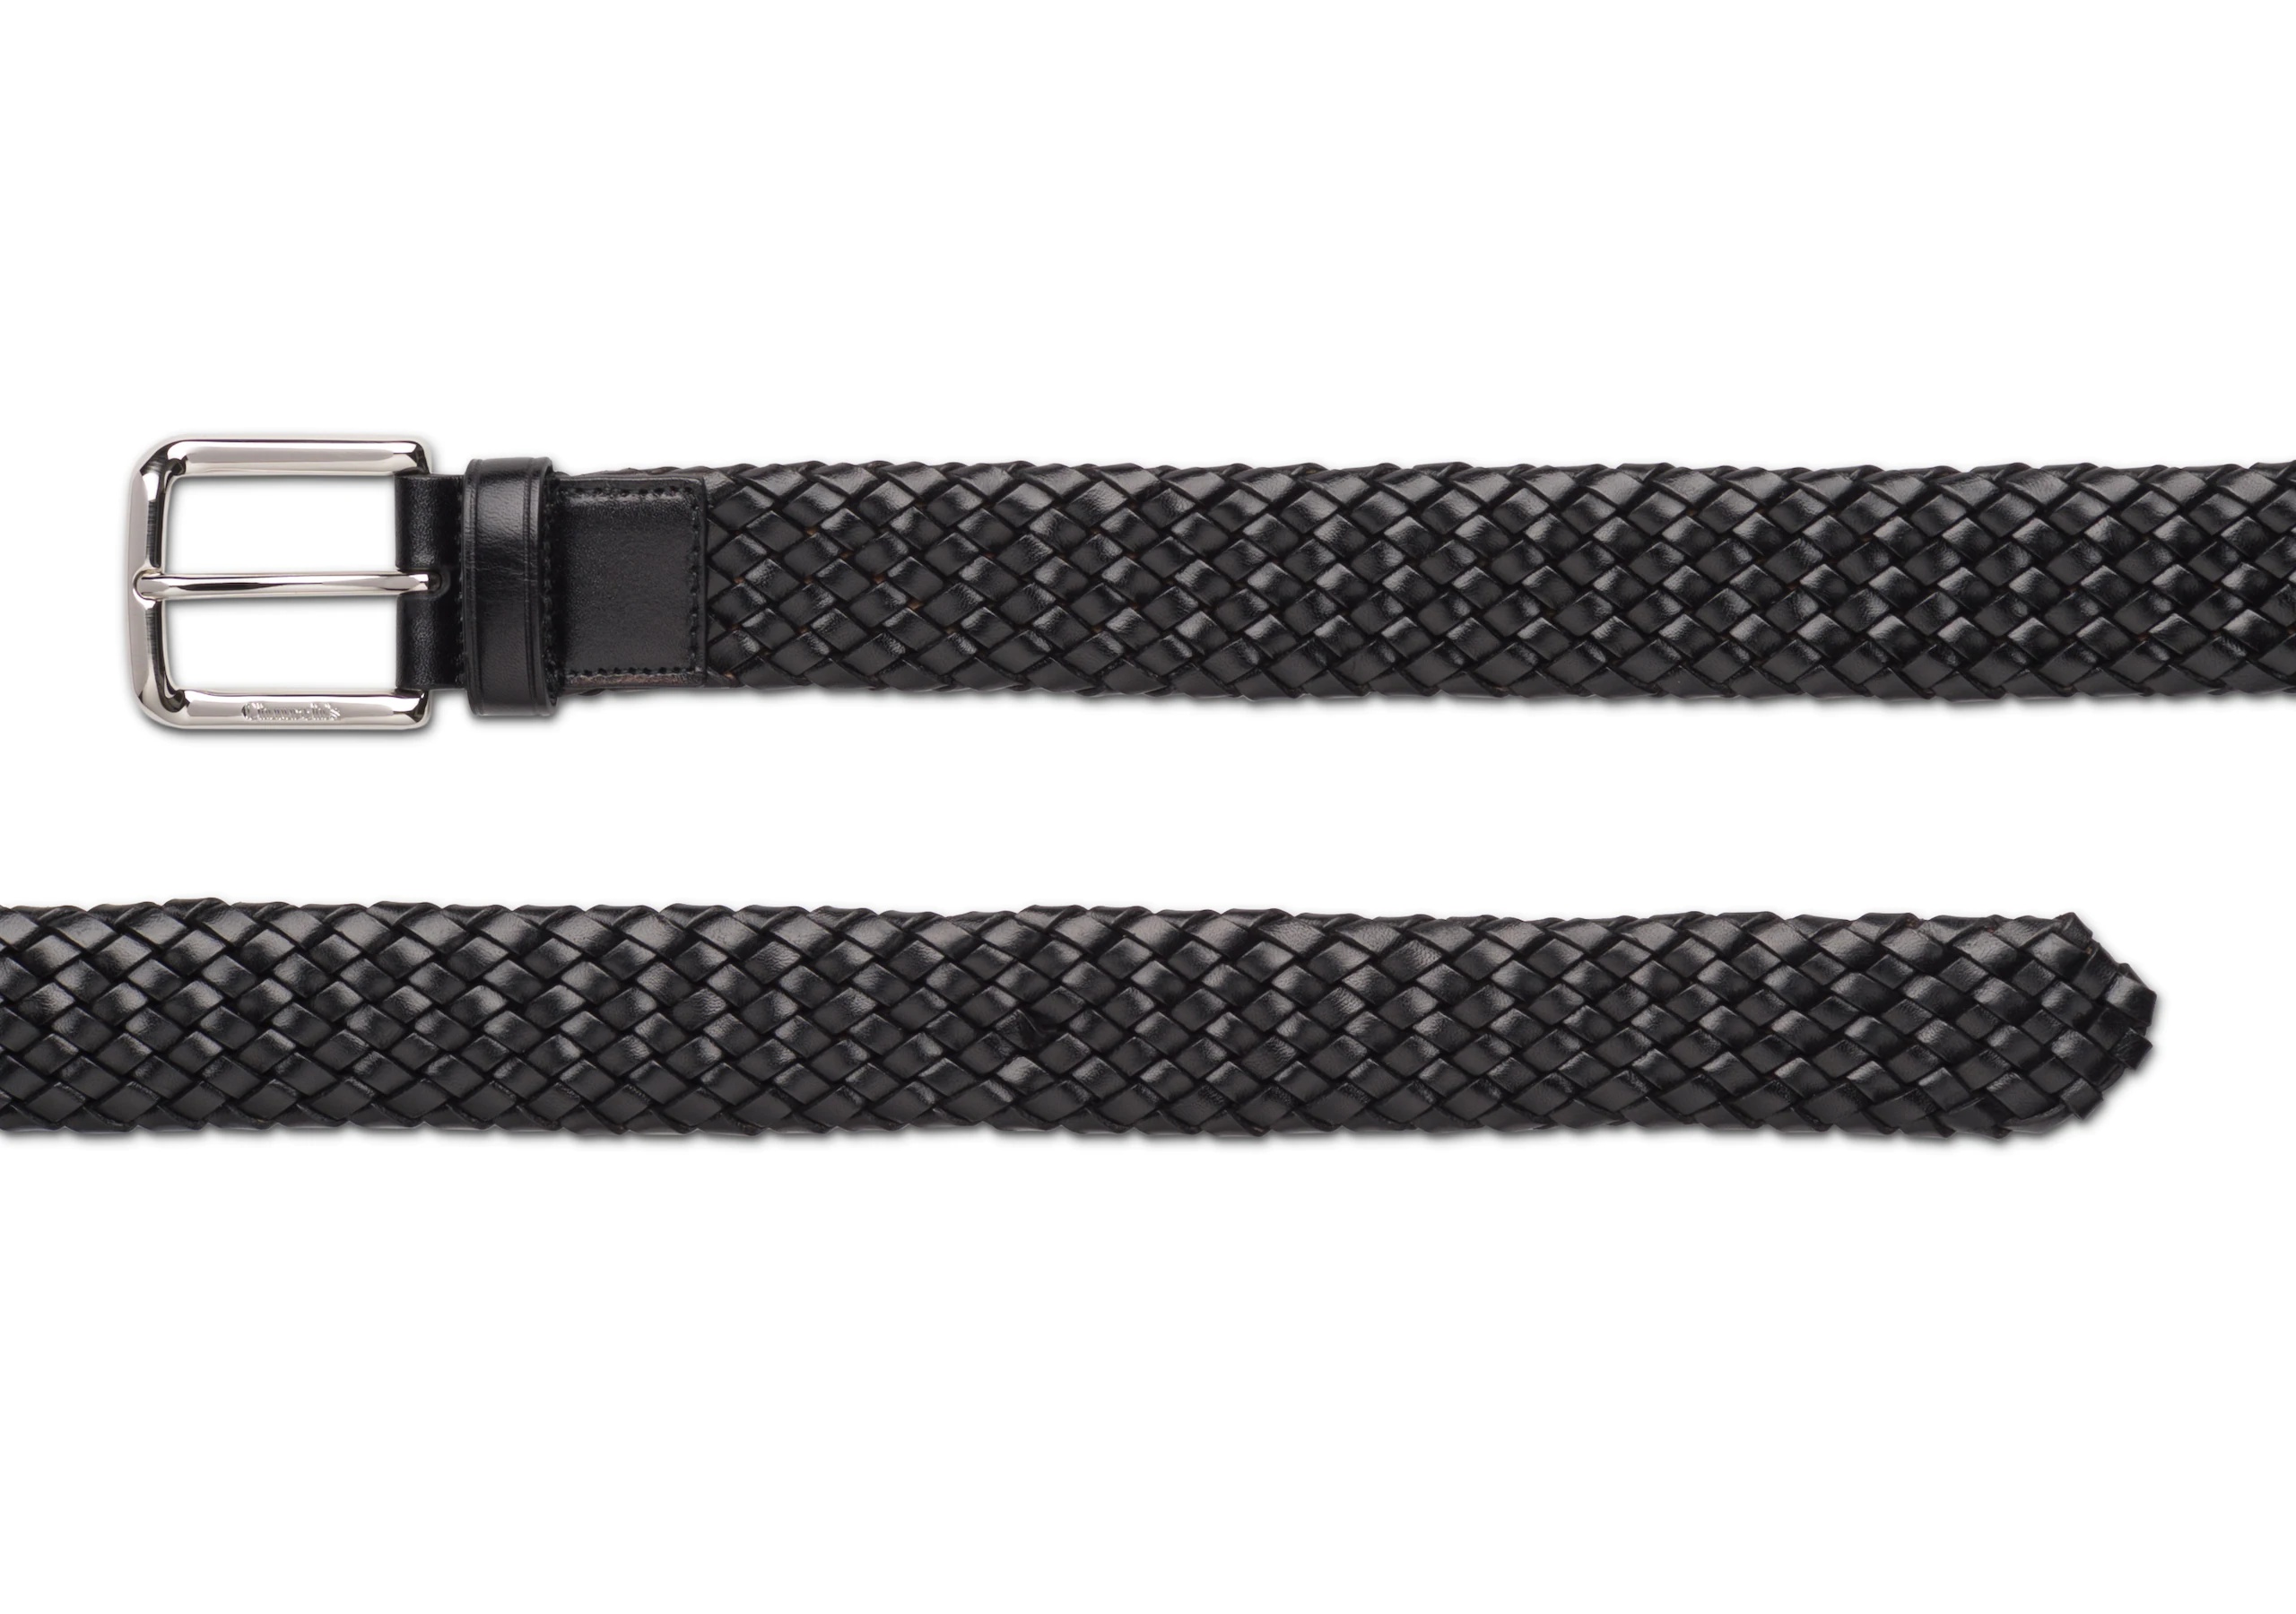 Woven belt
Polished Binder Weave Black - 2